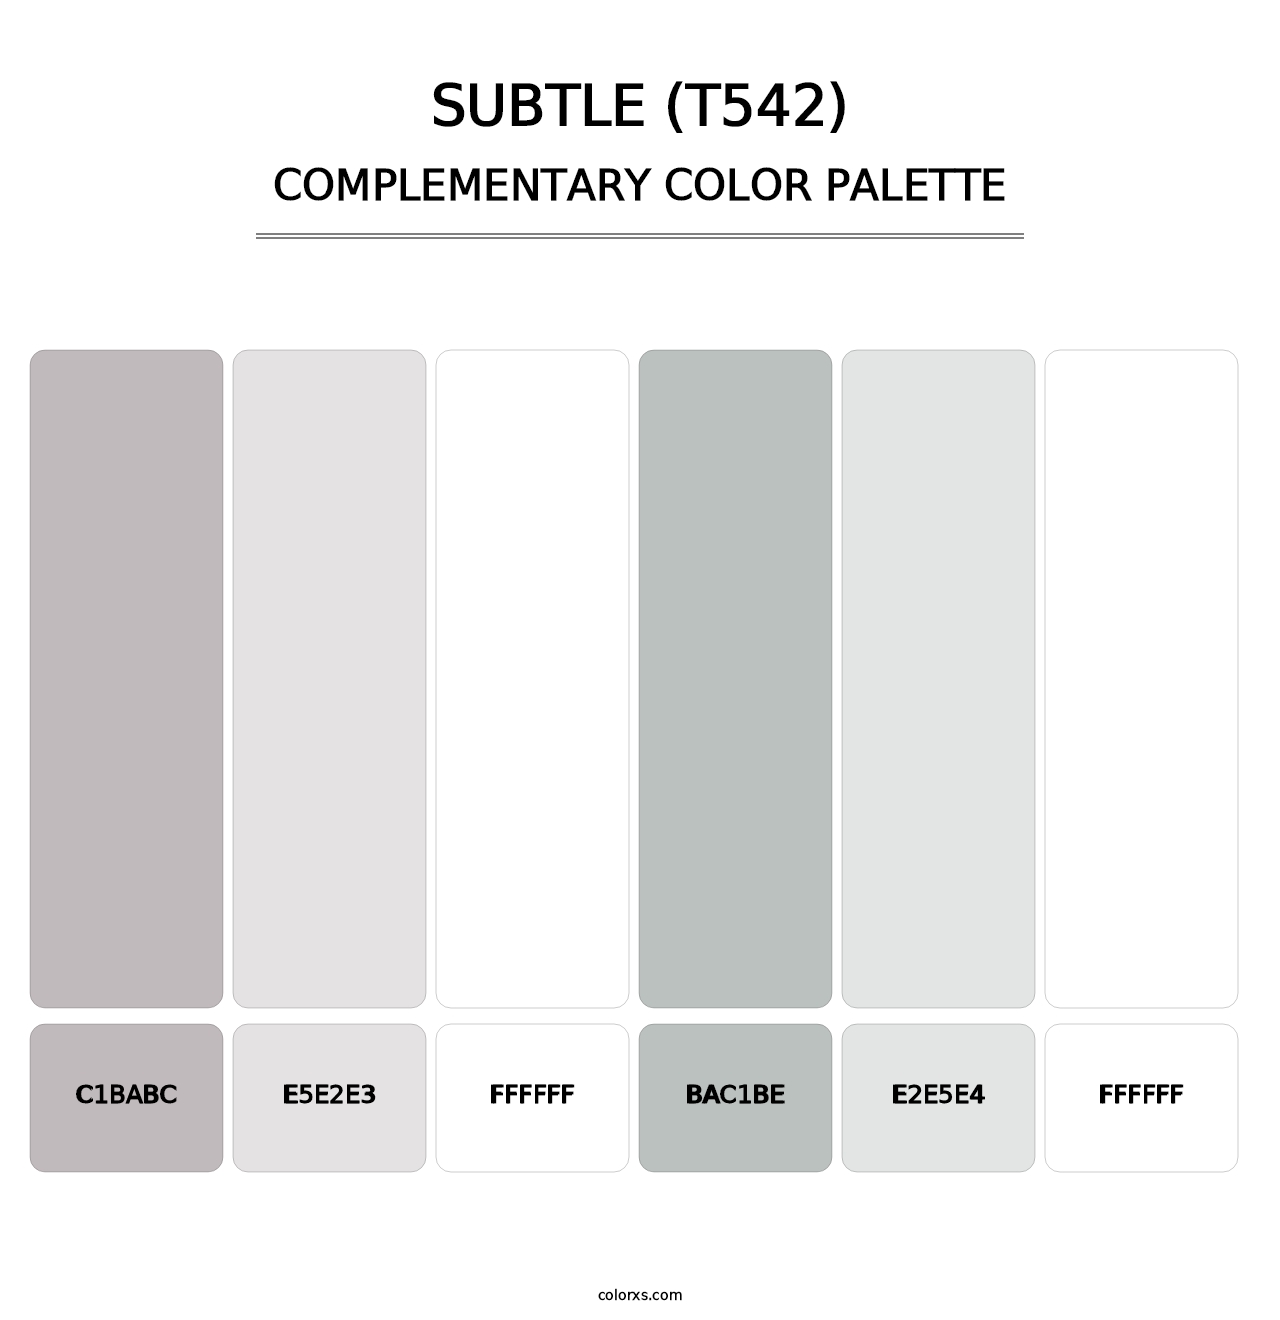 Subtle (T542) - Complementary Color Palette